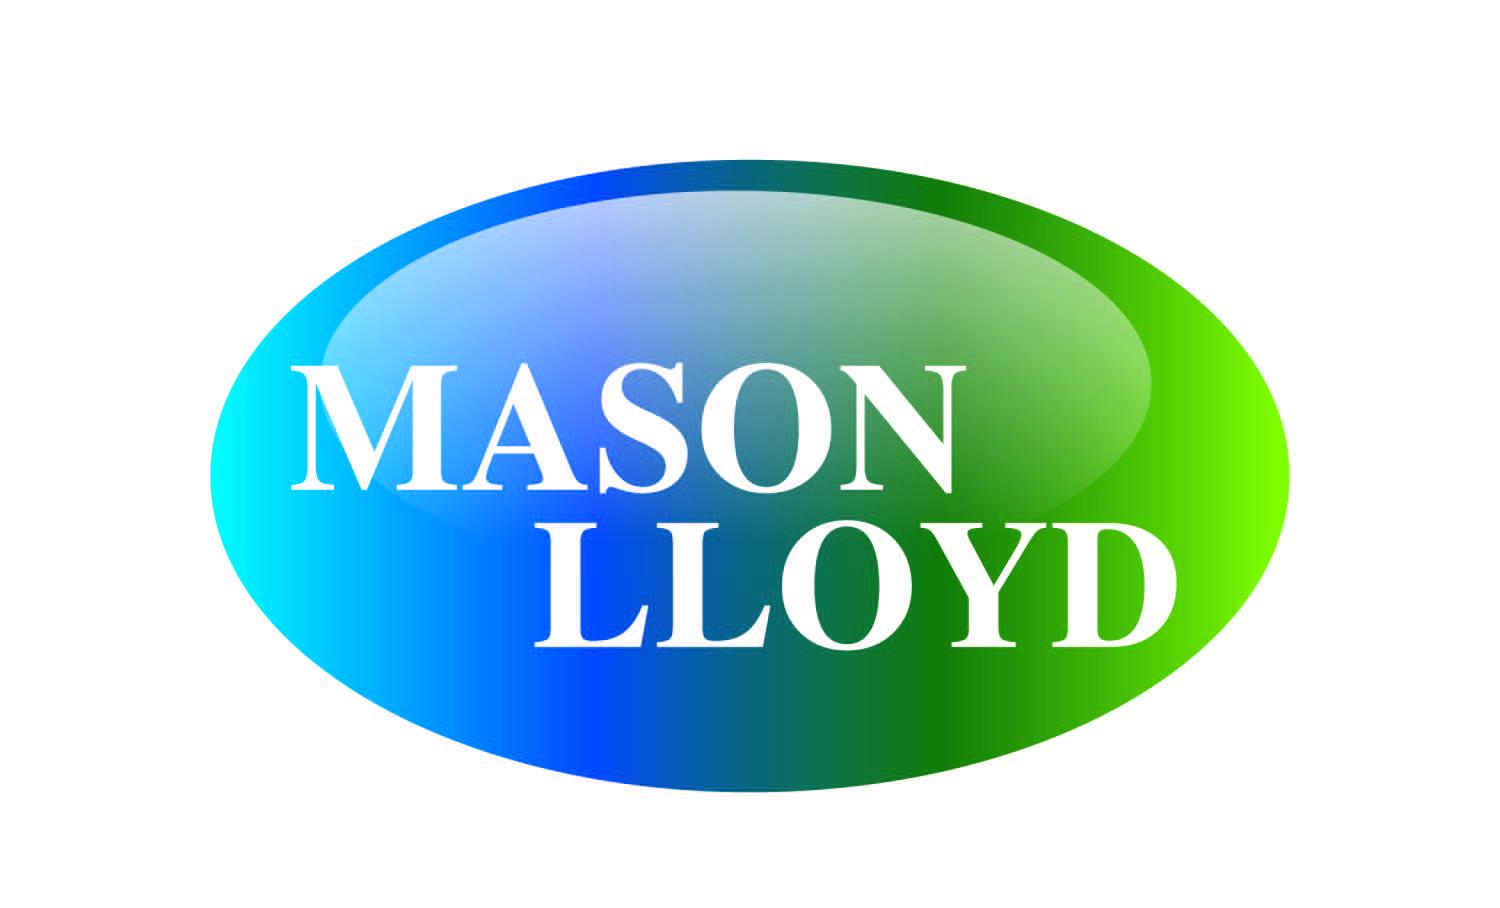 Mason Lloyd profile on Qualified.One